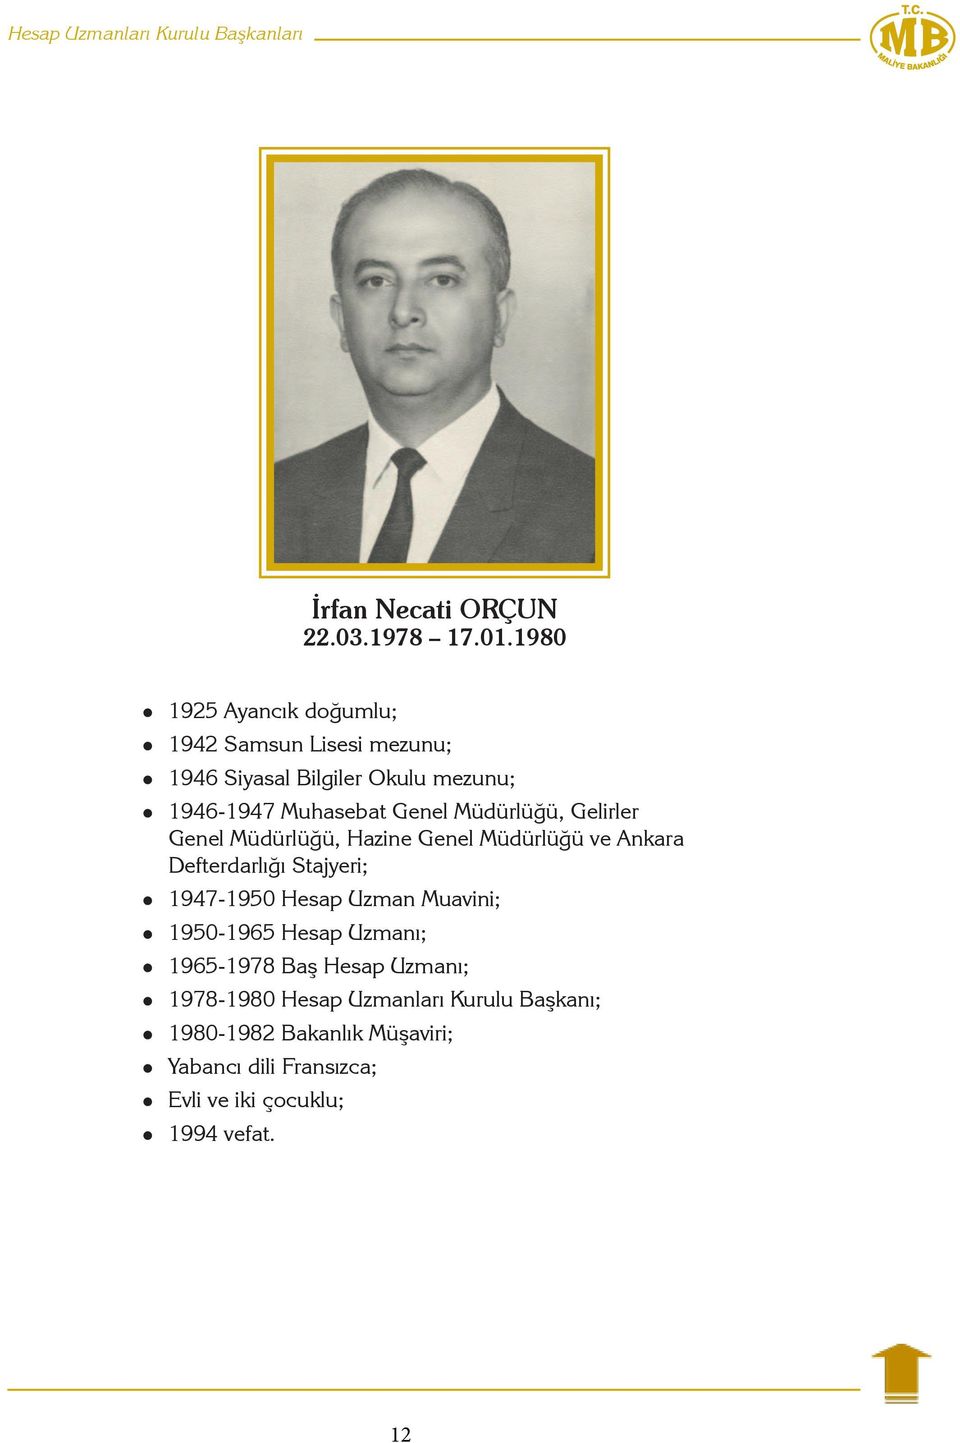 Müdürlüğü, Gelirler Genel Müdürlüğü, Hazine Genel Müdürlüğü ve Ankara Defterdarlığı Stajyeri; 1947-1950 Hesap Uzman